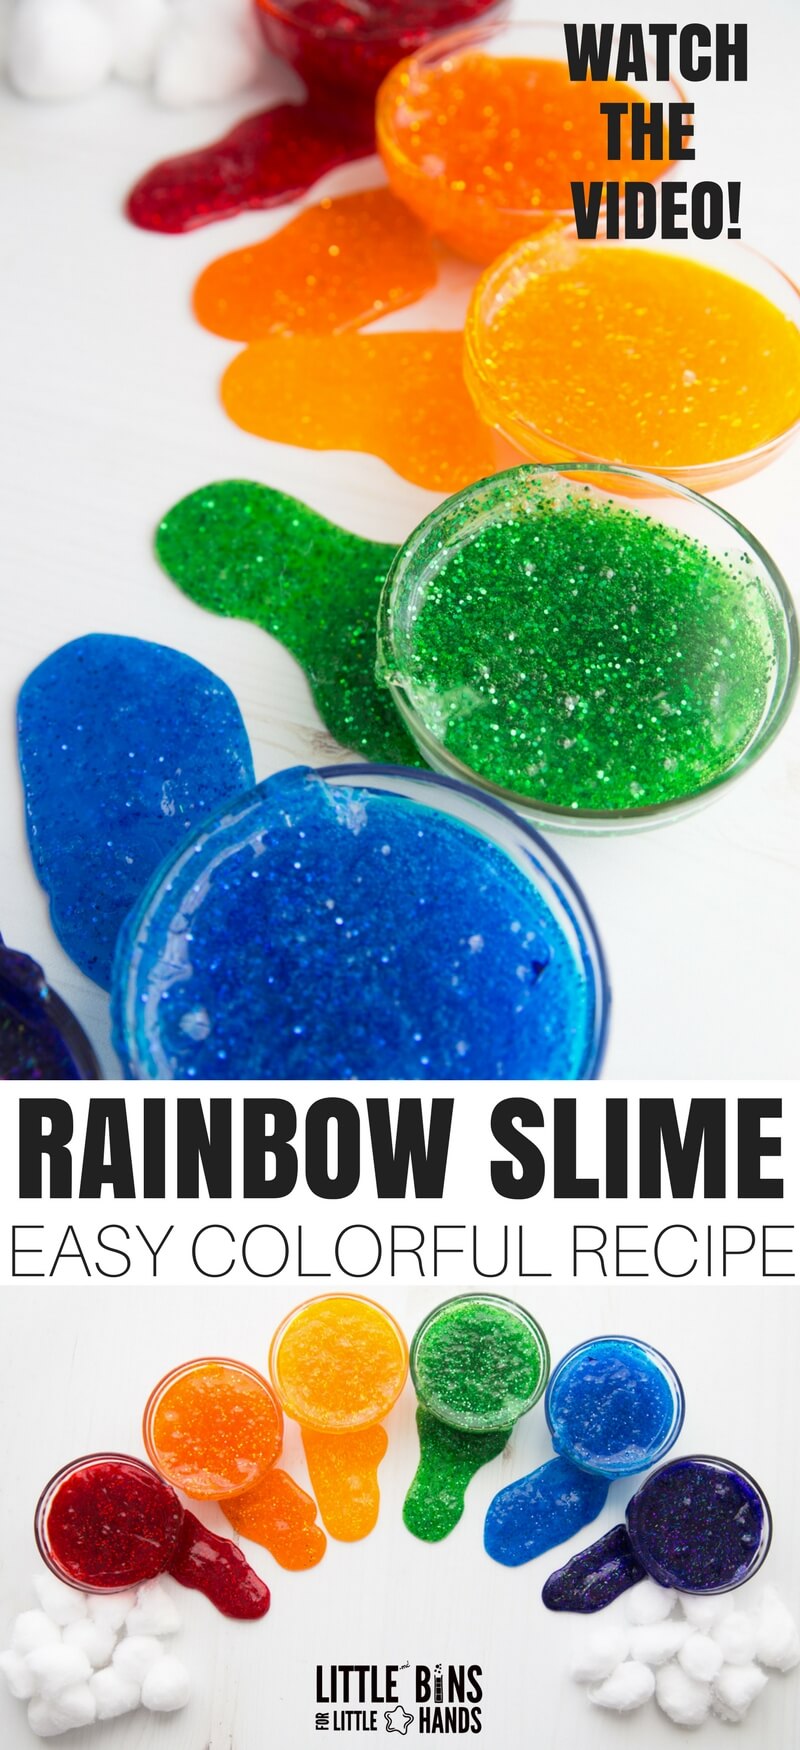 Lako napraviti Rainbow Glitter Slime - Male kante za male ruke